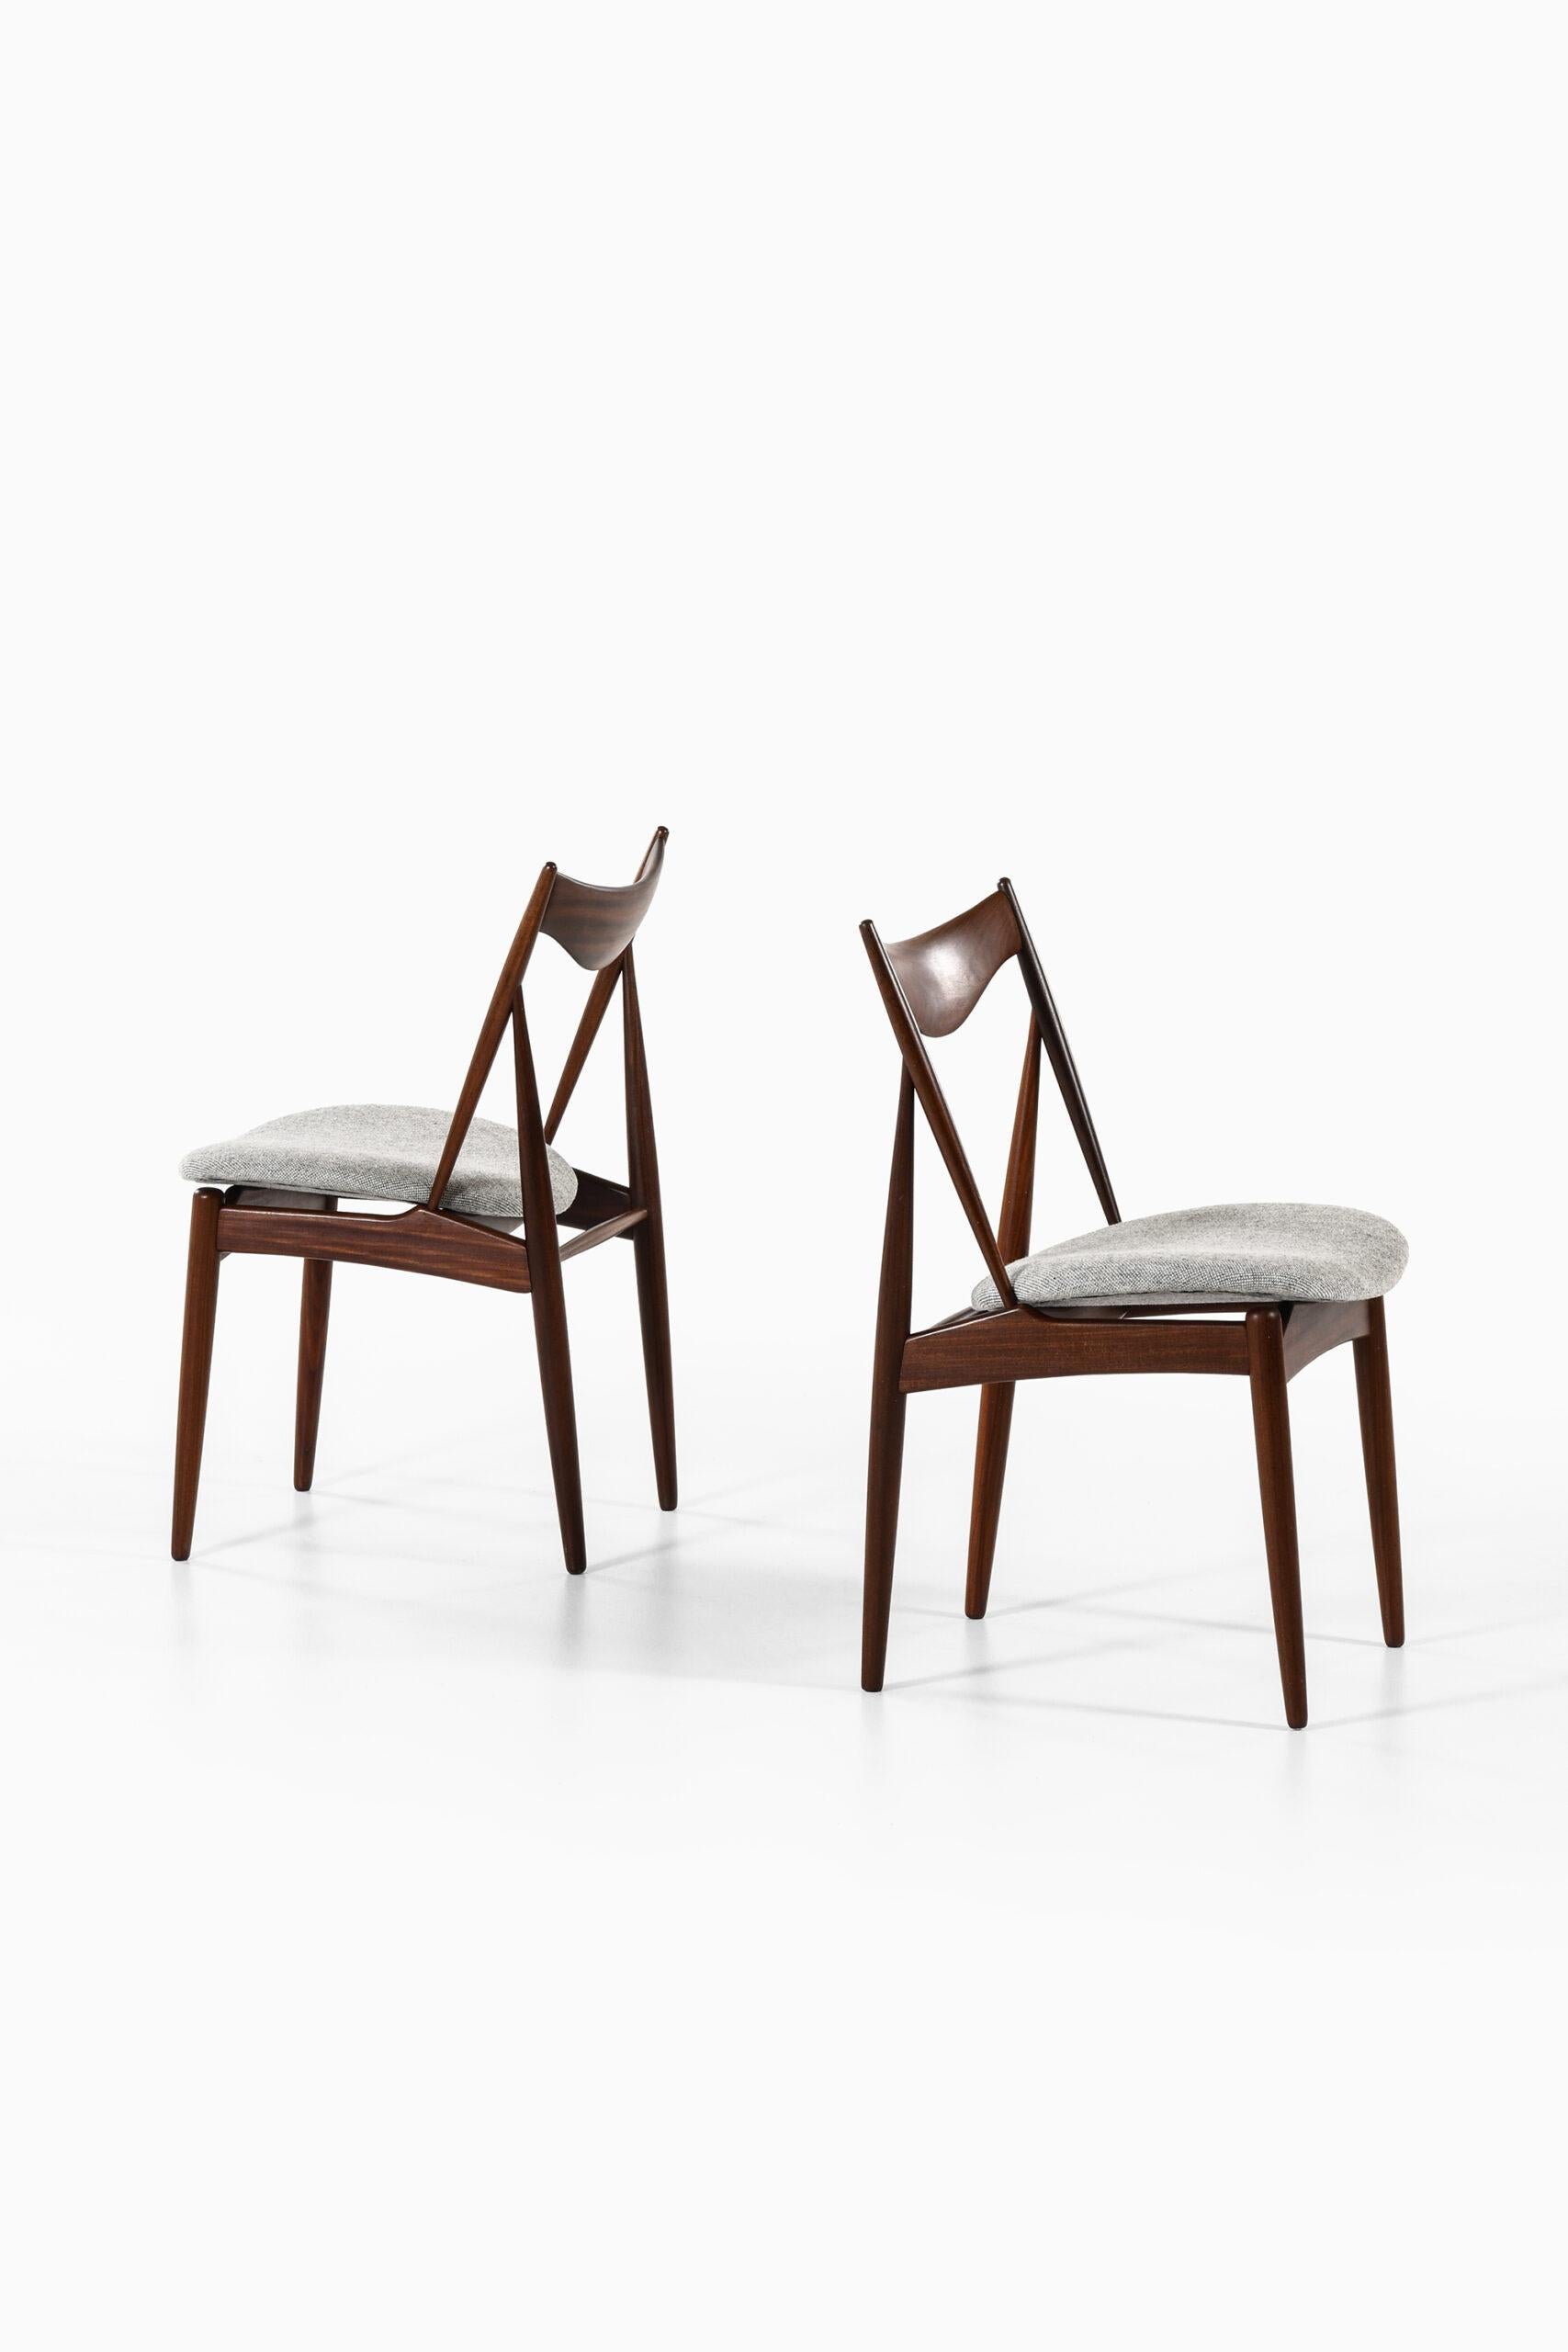 Très rare ensemble de 10 chaises de salle à manger conçu par Kurt Østervig. Produit par Bramin au Danemark.